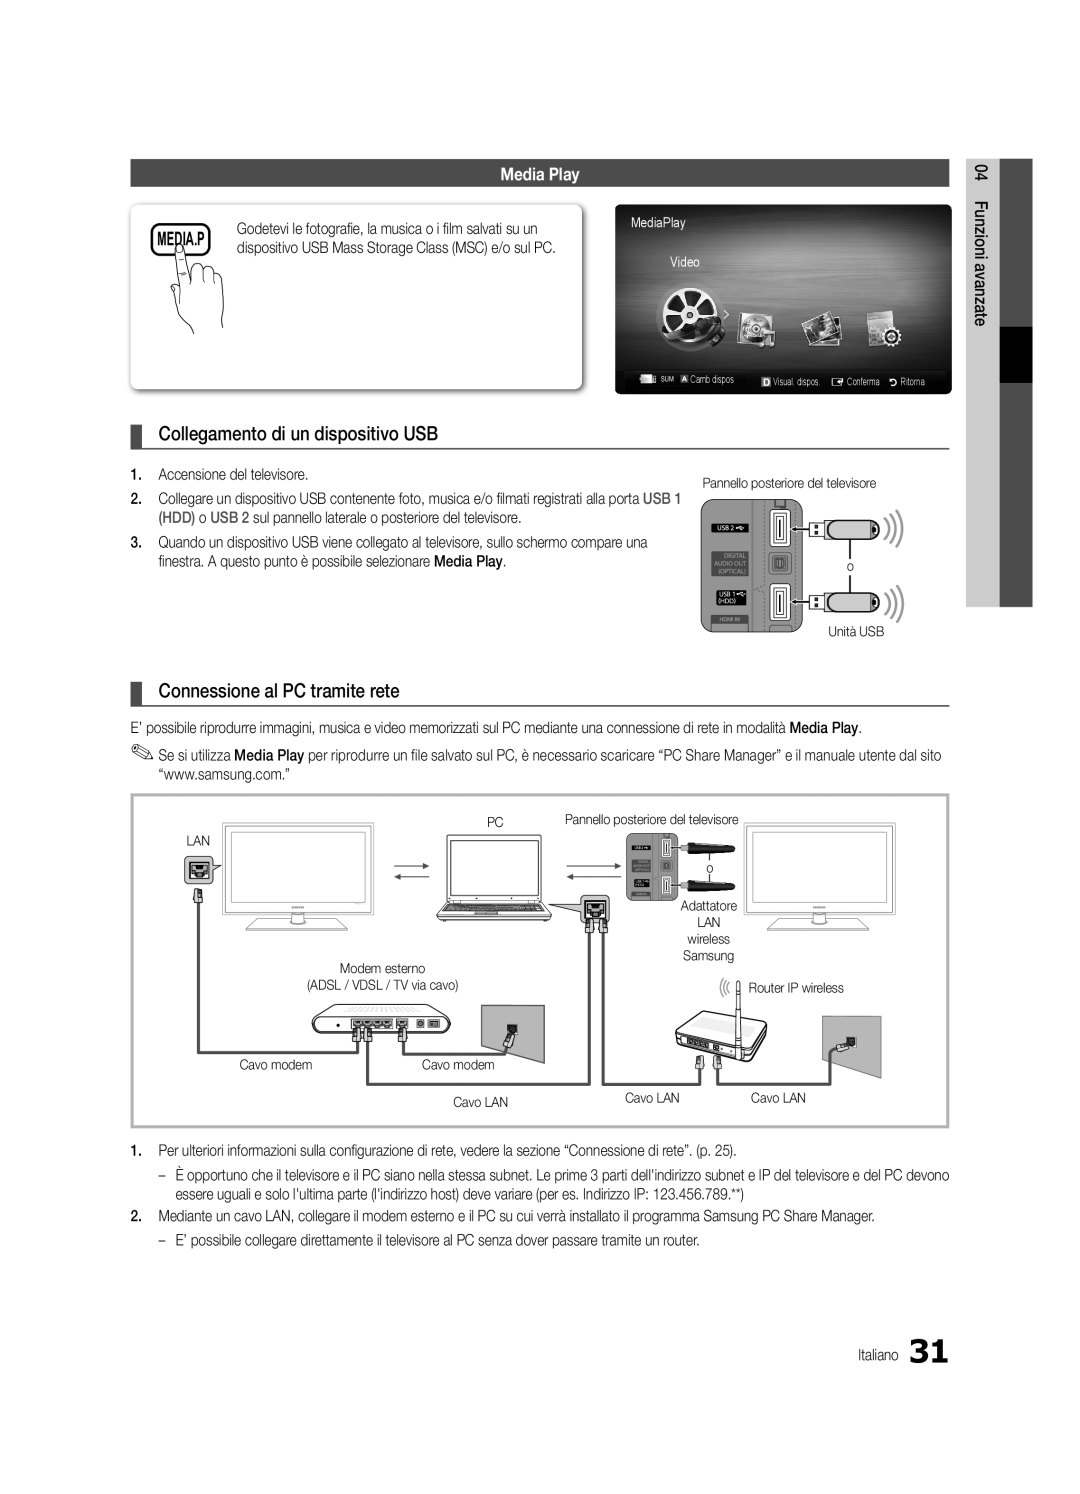 Samsung UE40C5700QSXZG manual Collegamento di un dispositivo USB, Connessione al PC tramite rete, Media.P, MediaPlay Video 